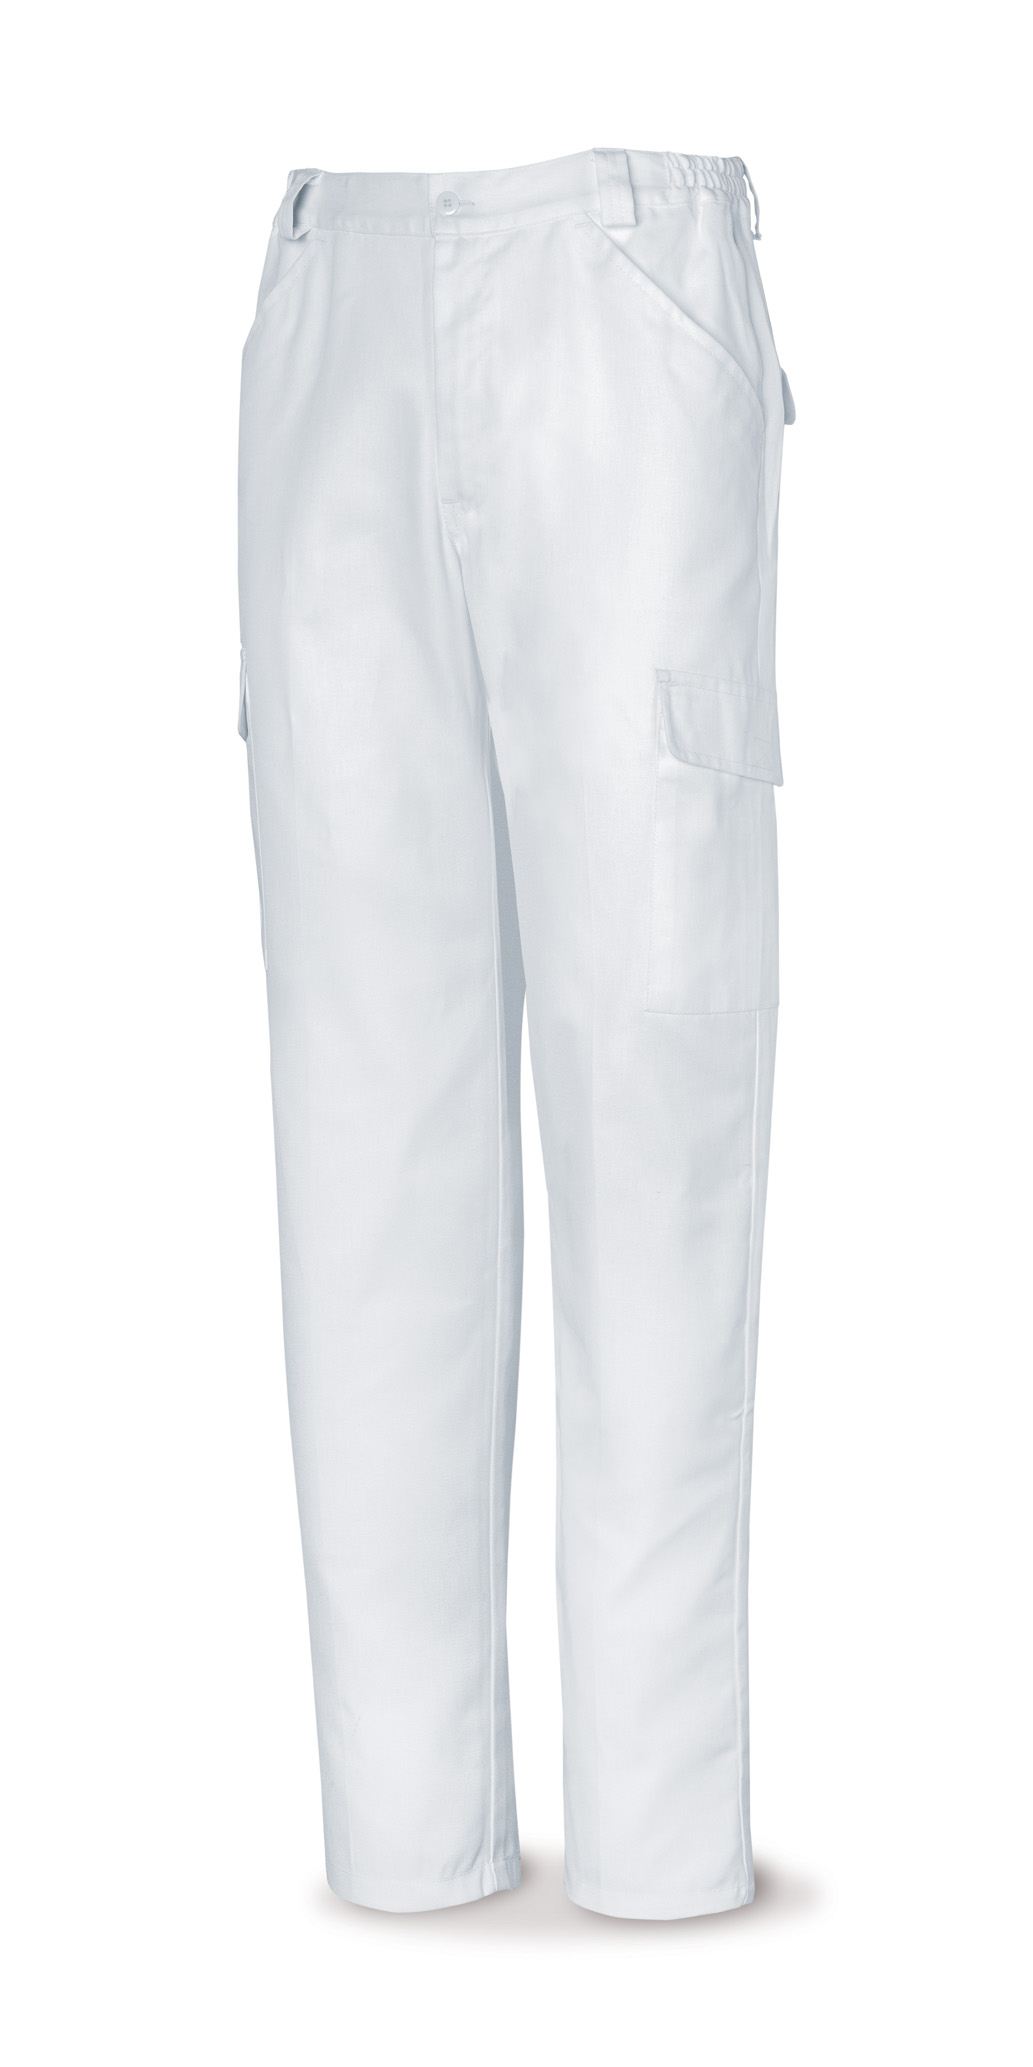 Pantalon tergal blanco 38